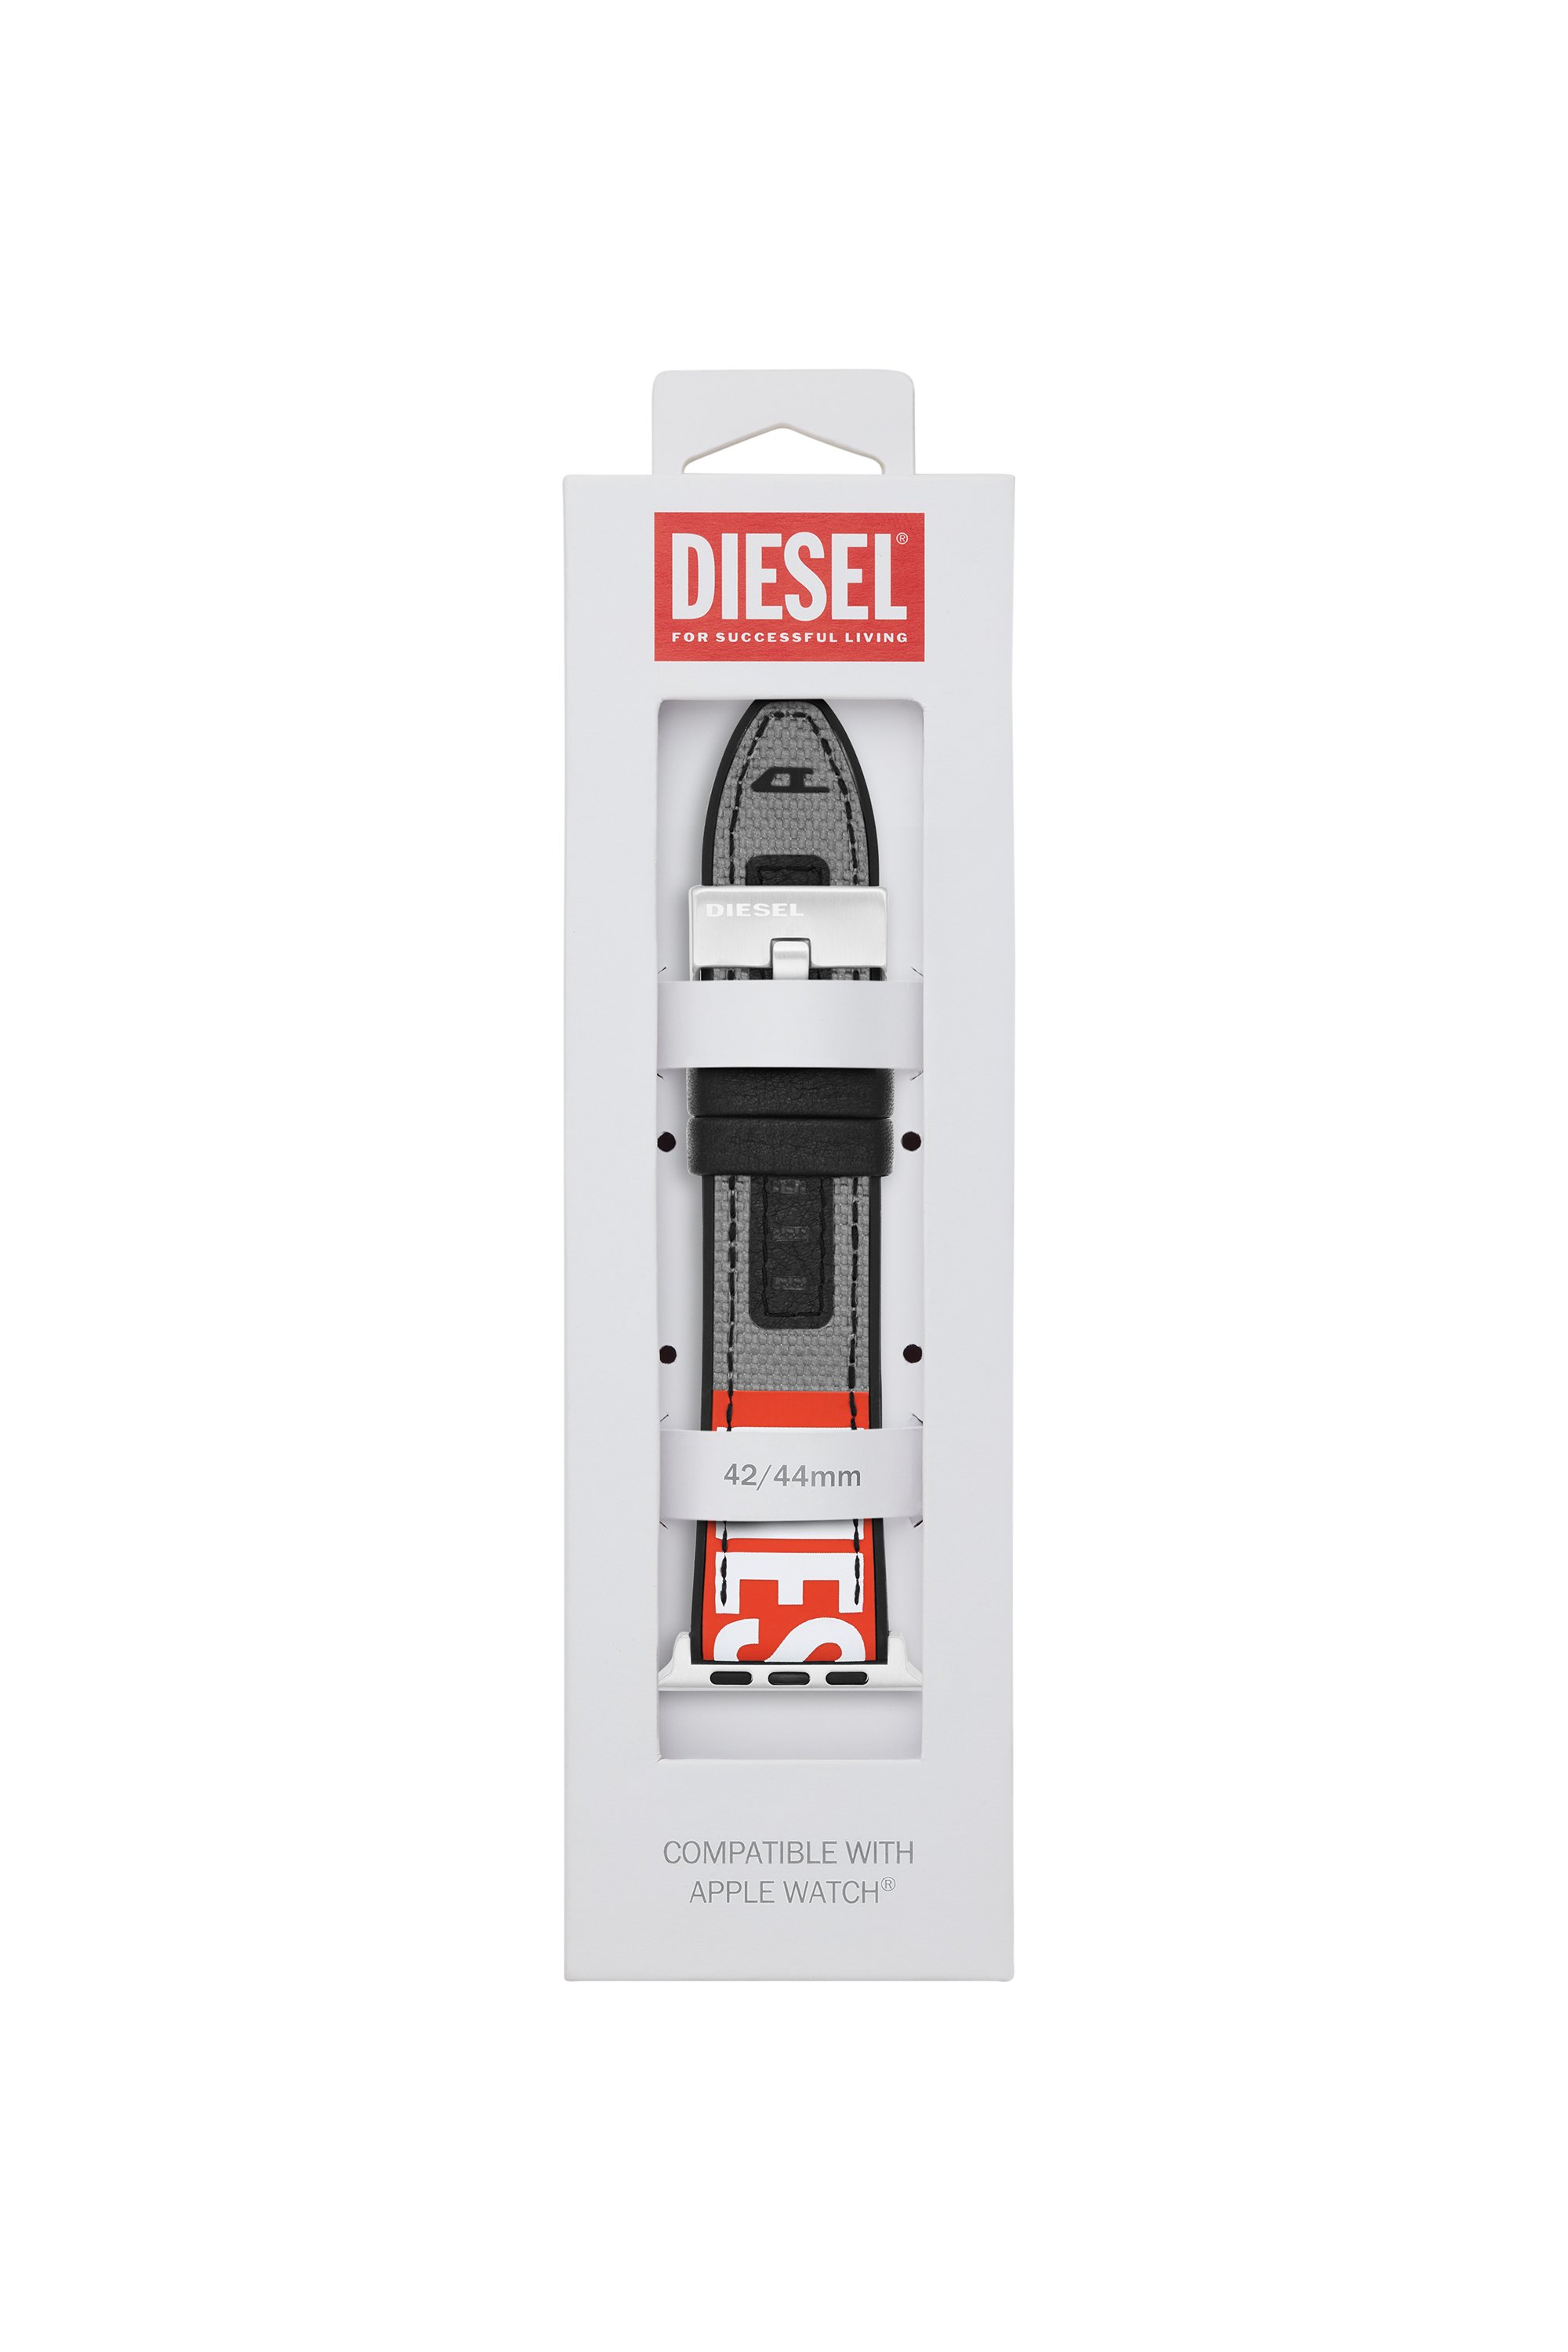 Diesel - DSS006, Grau - Image 2